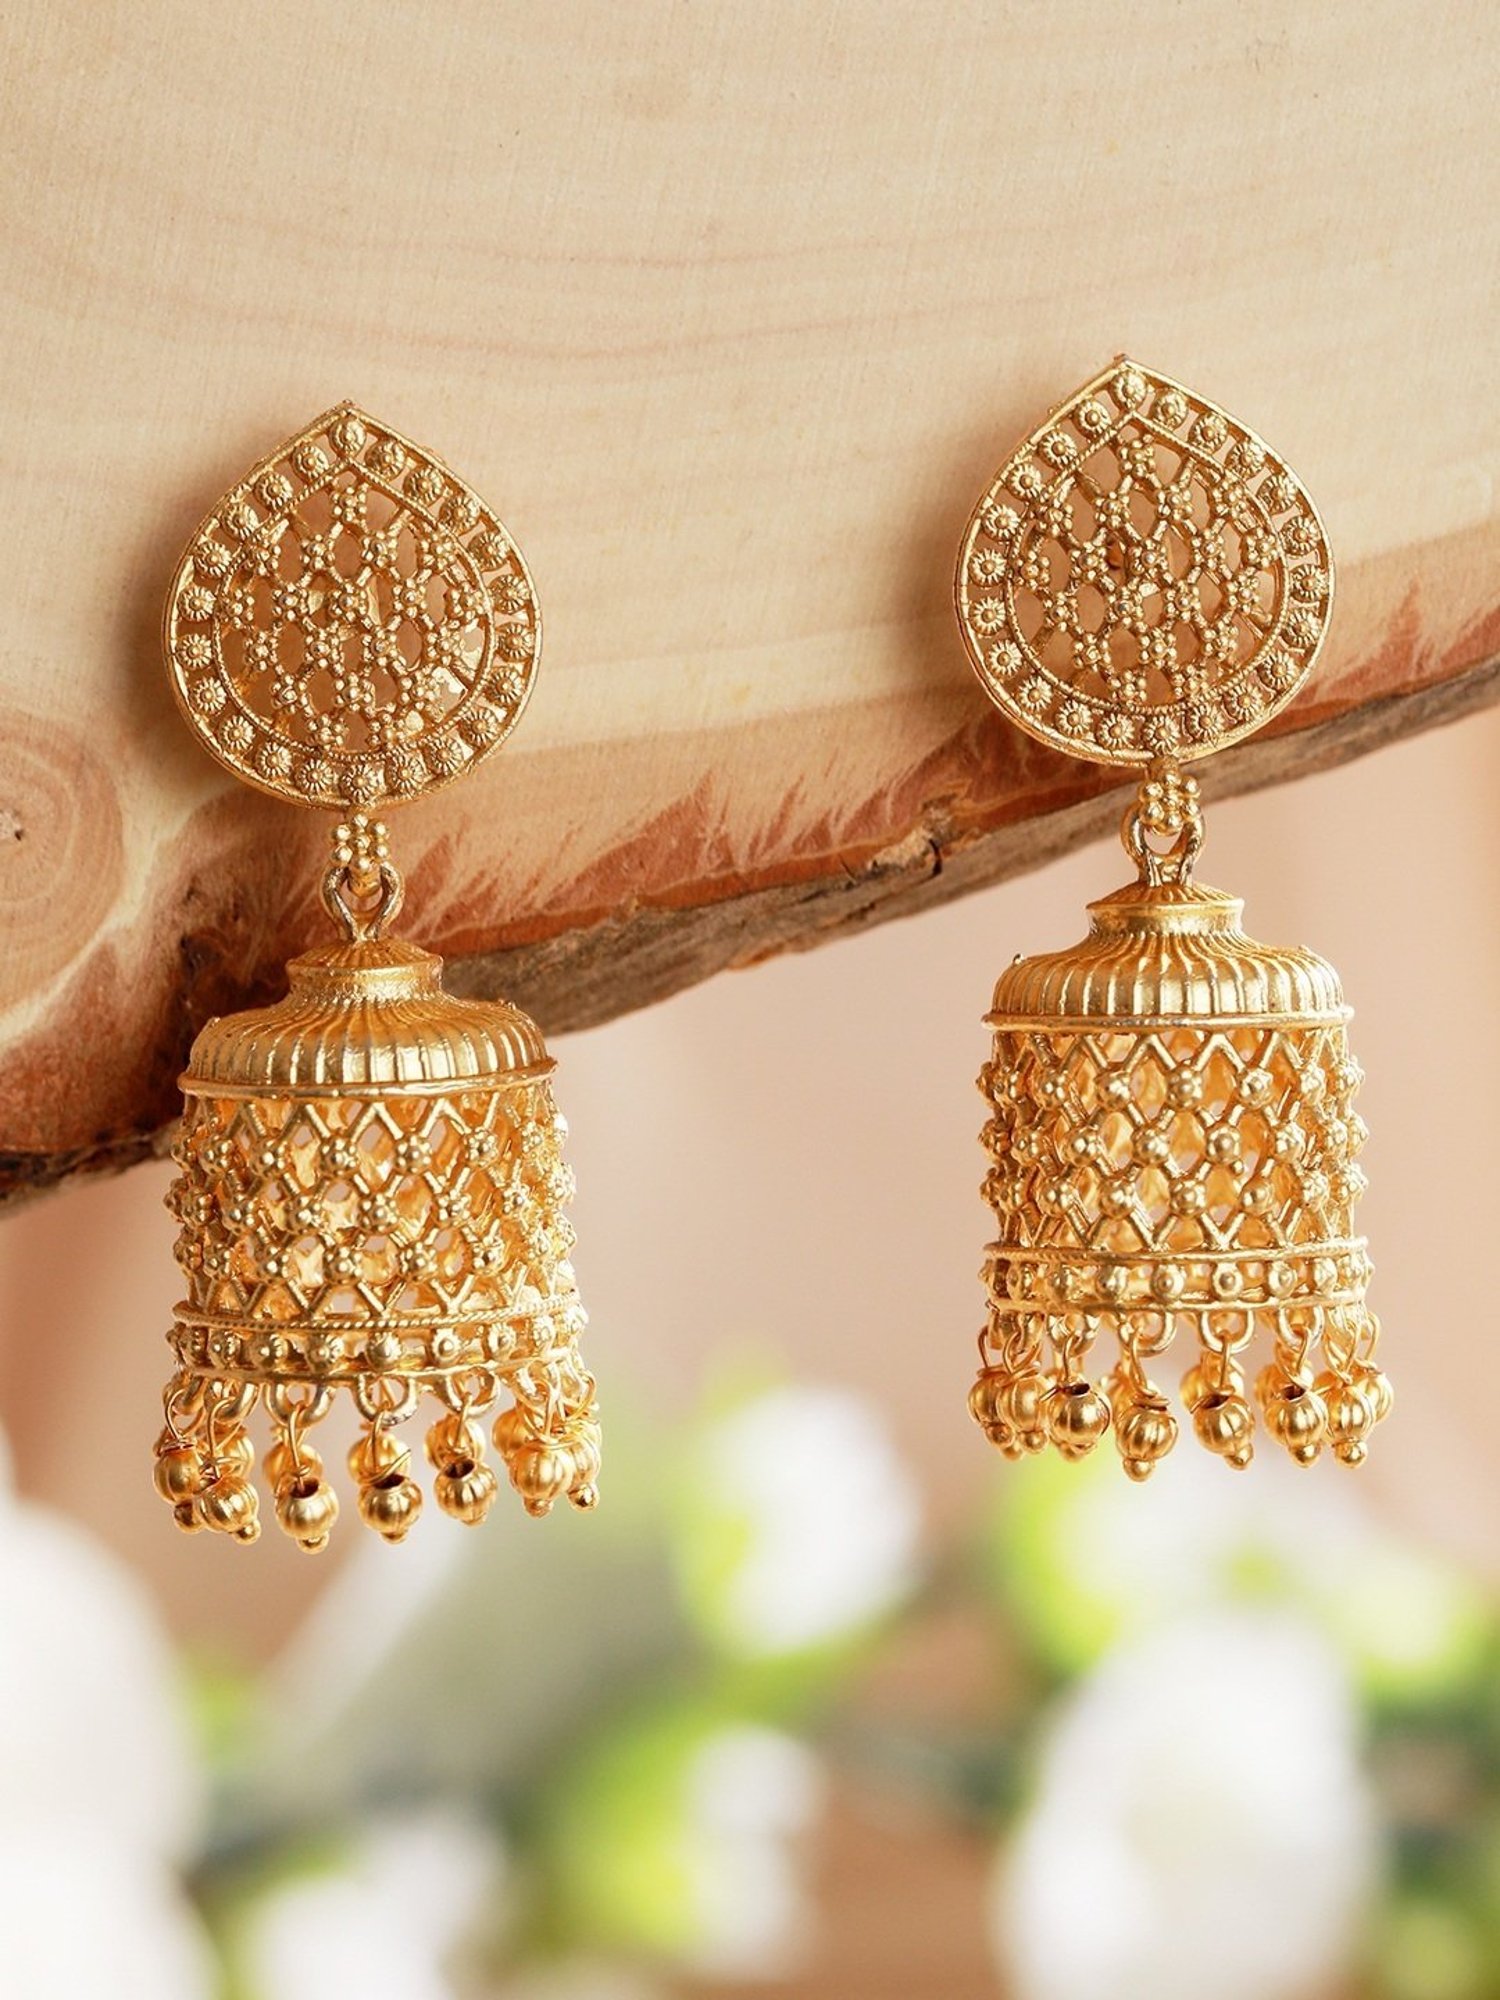 Buy 22k Gold Navratna Gemstone Stud Earrings Handmade Stud Antique Earrings  Gift for Her Wedding Gift for Women Anniversary Gift Nine Stone Stud Online  in India - Etsy